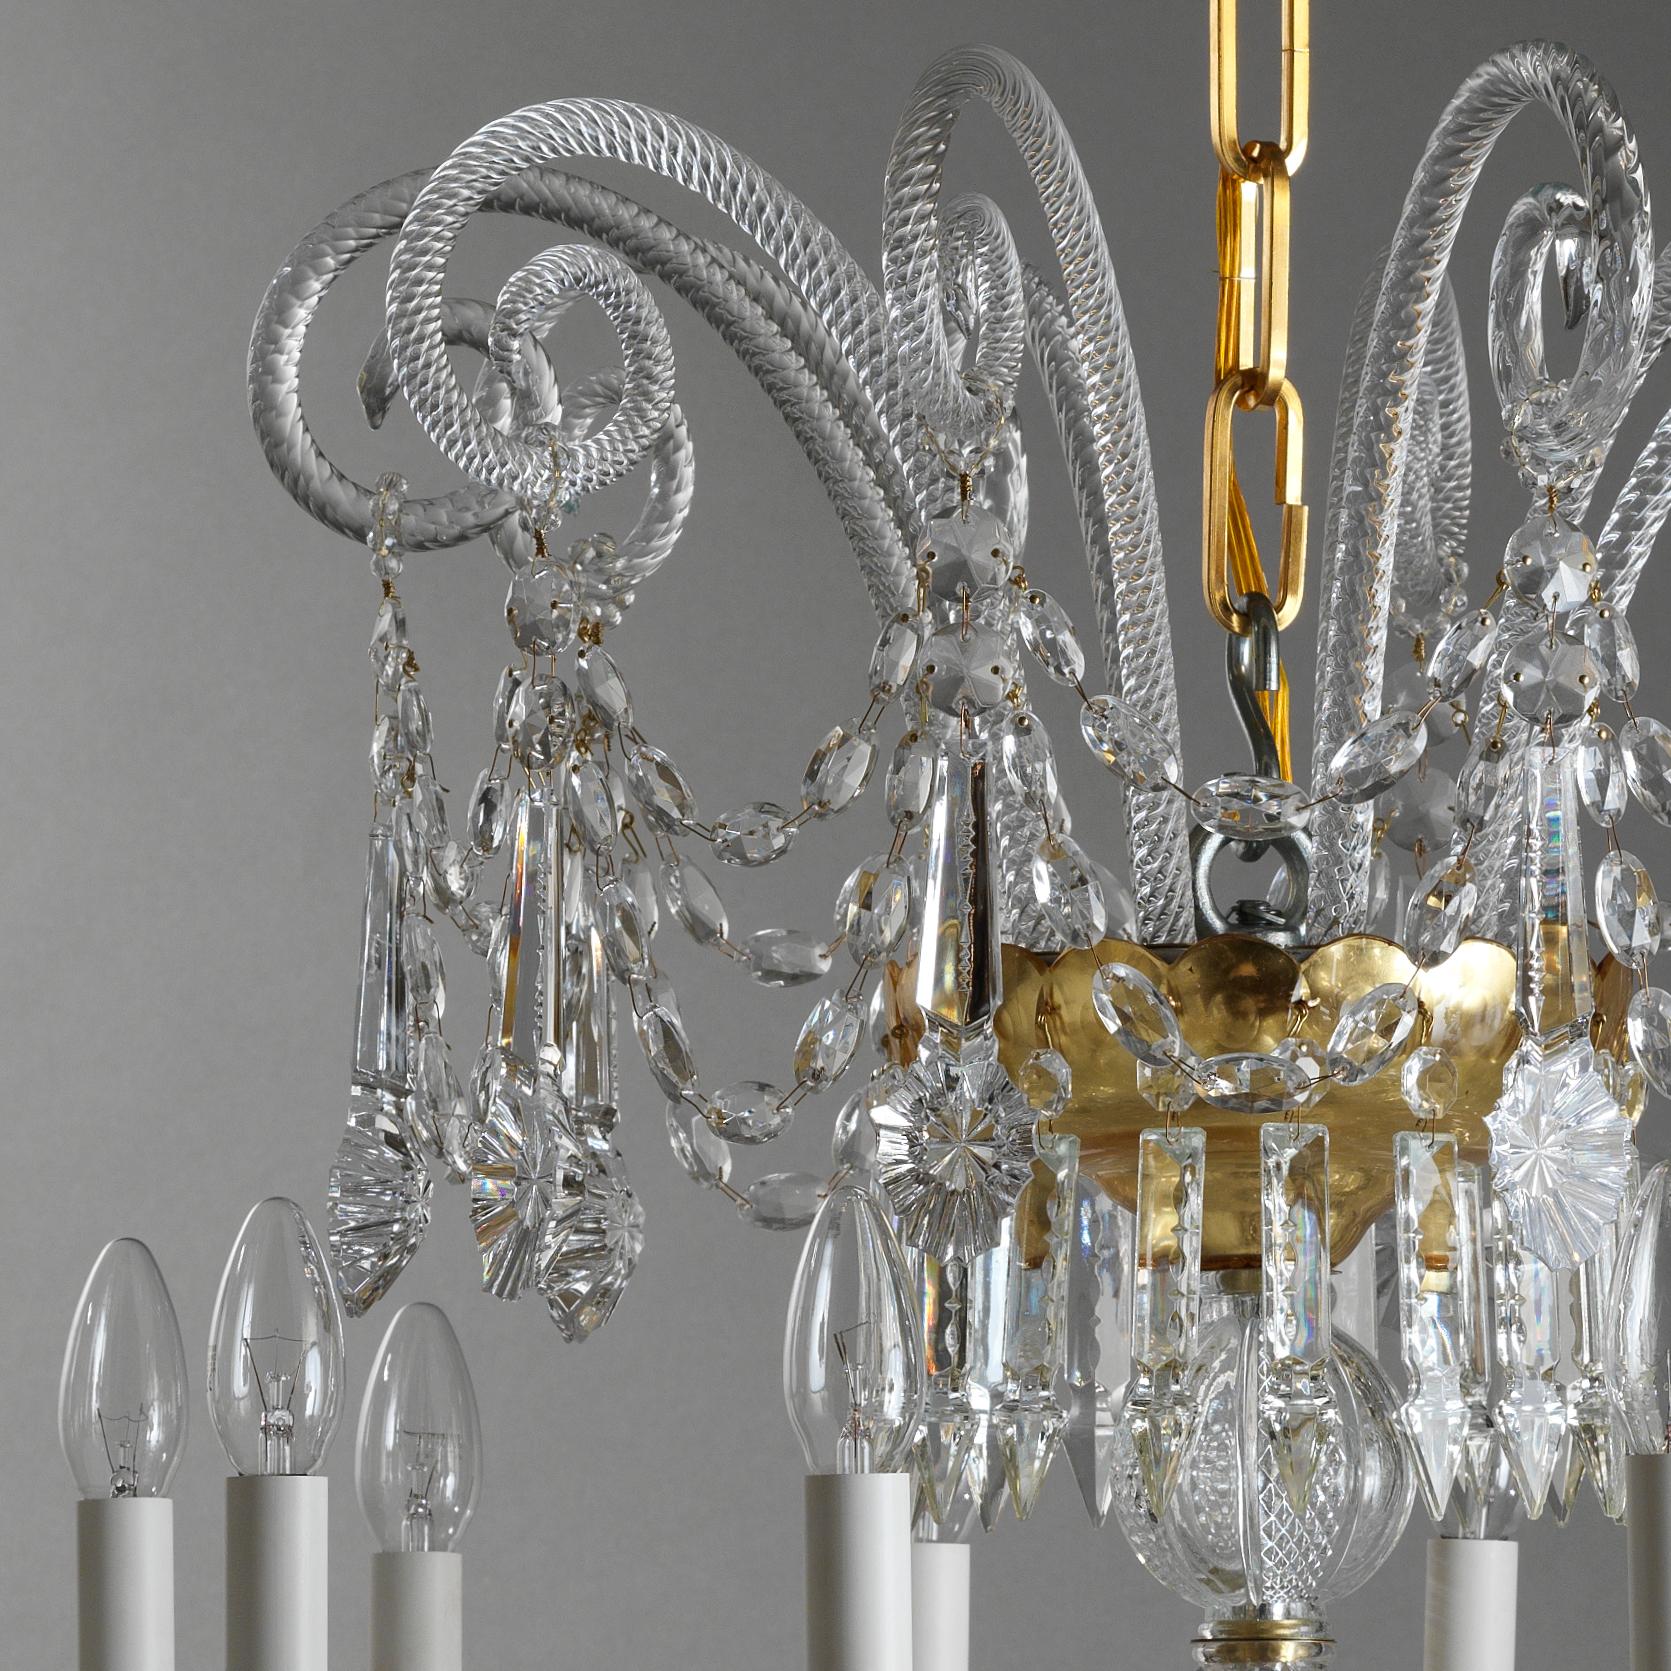 Ce lustre de style XVIIIe siècle en cristal et verre soufflé de Gherardo Degli Albizzi, est réalisé en couleur transparente avec des coupes dorées. Ce lustre est composé de trois couches de branches. Des pastorales de la couronne supérieure